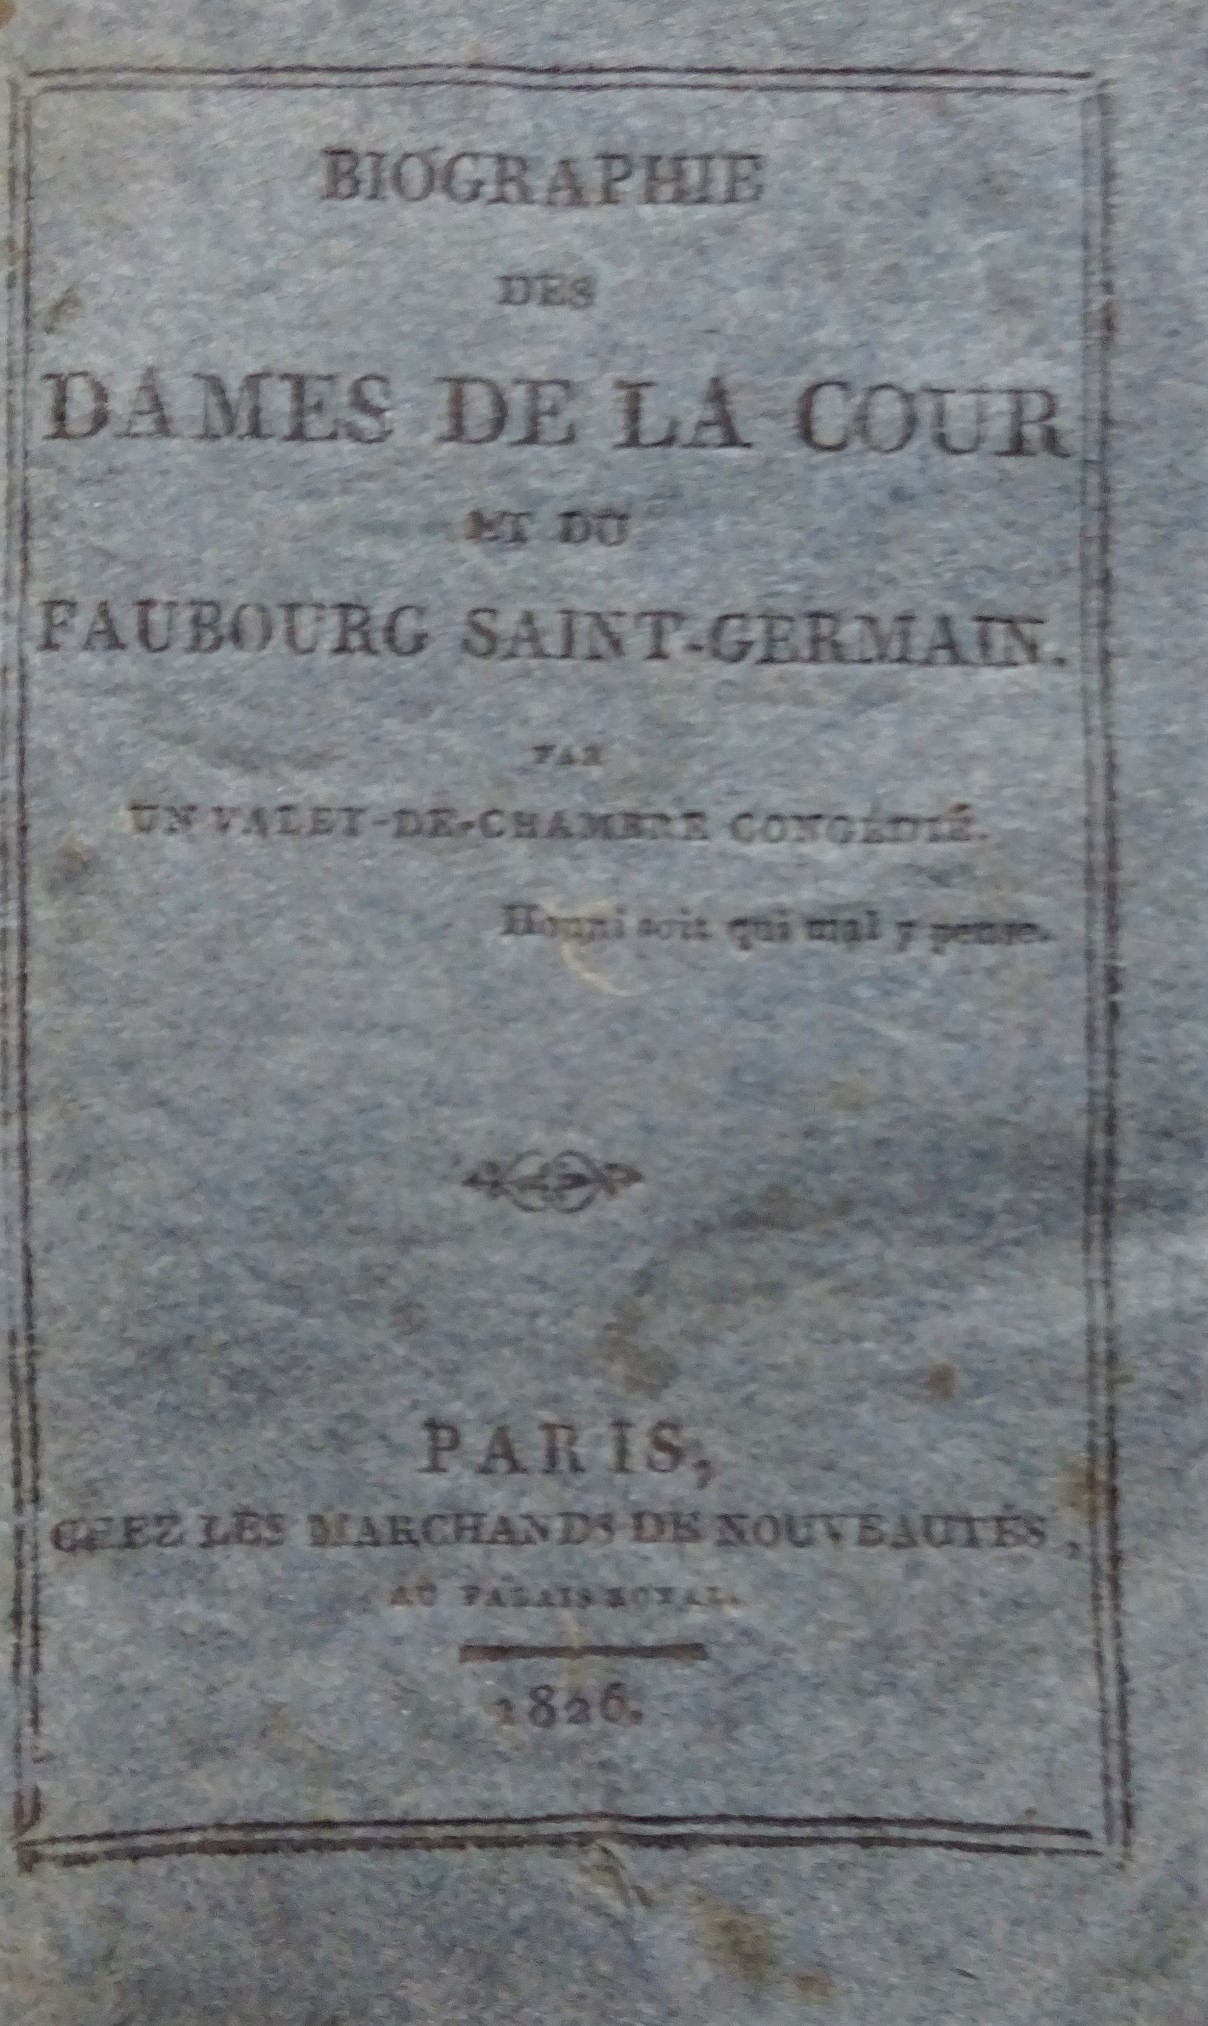 Biographie des dames de la Cour et du Faubourg Saint-Germain